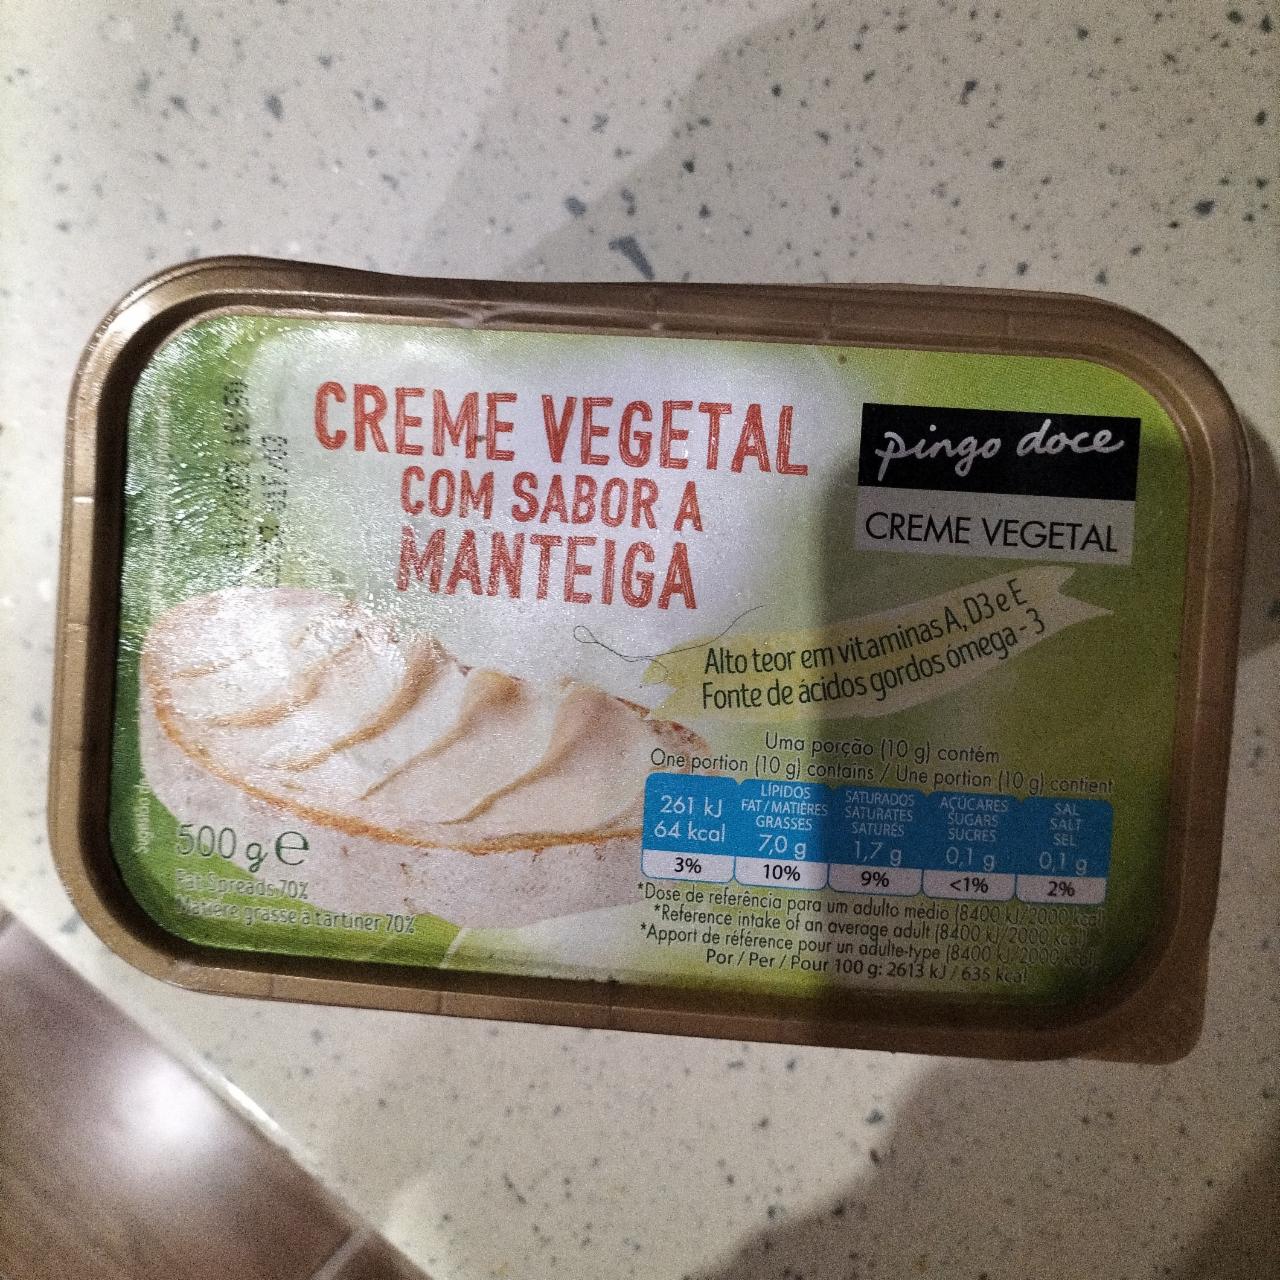 Фото - растительный крем Creme Vegetal Com Sabora Manteiga Pingo doce